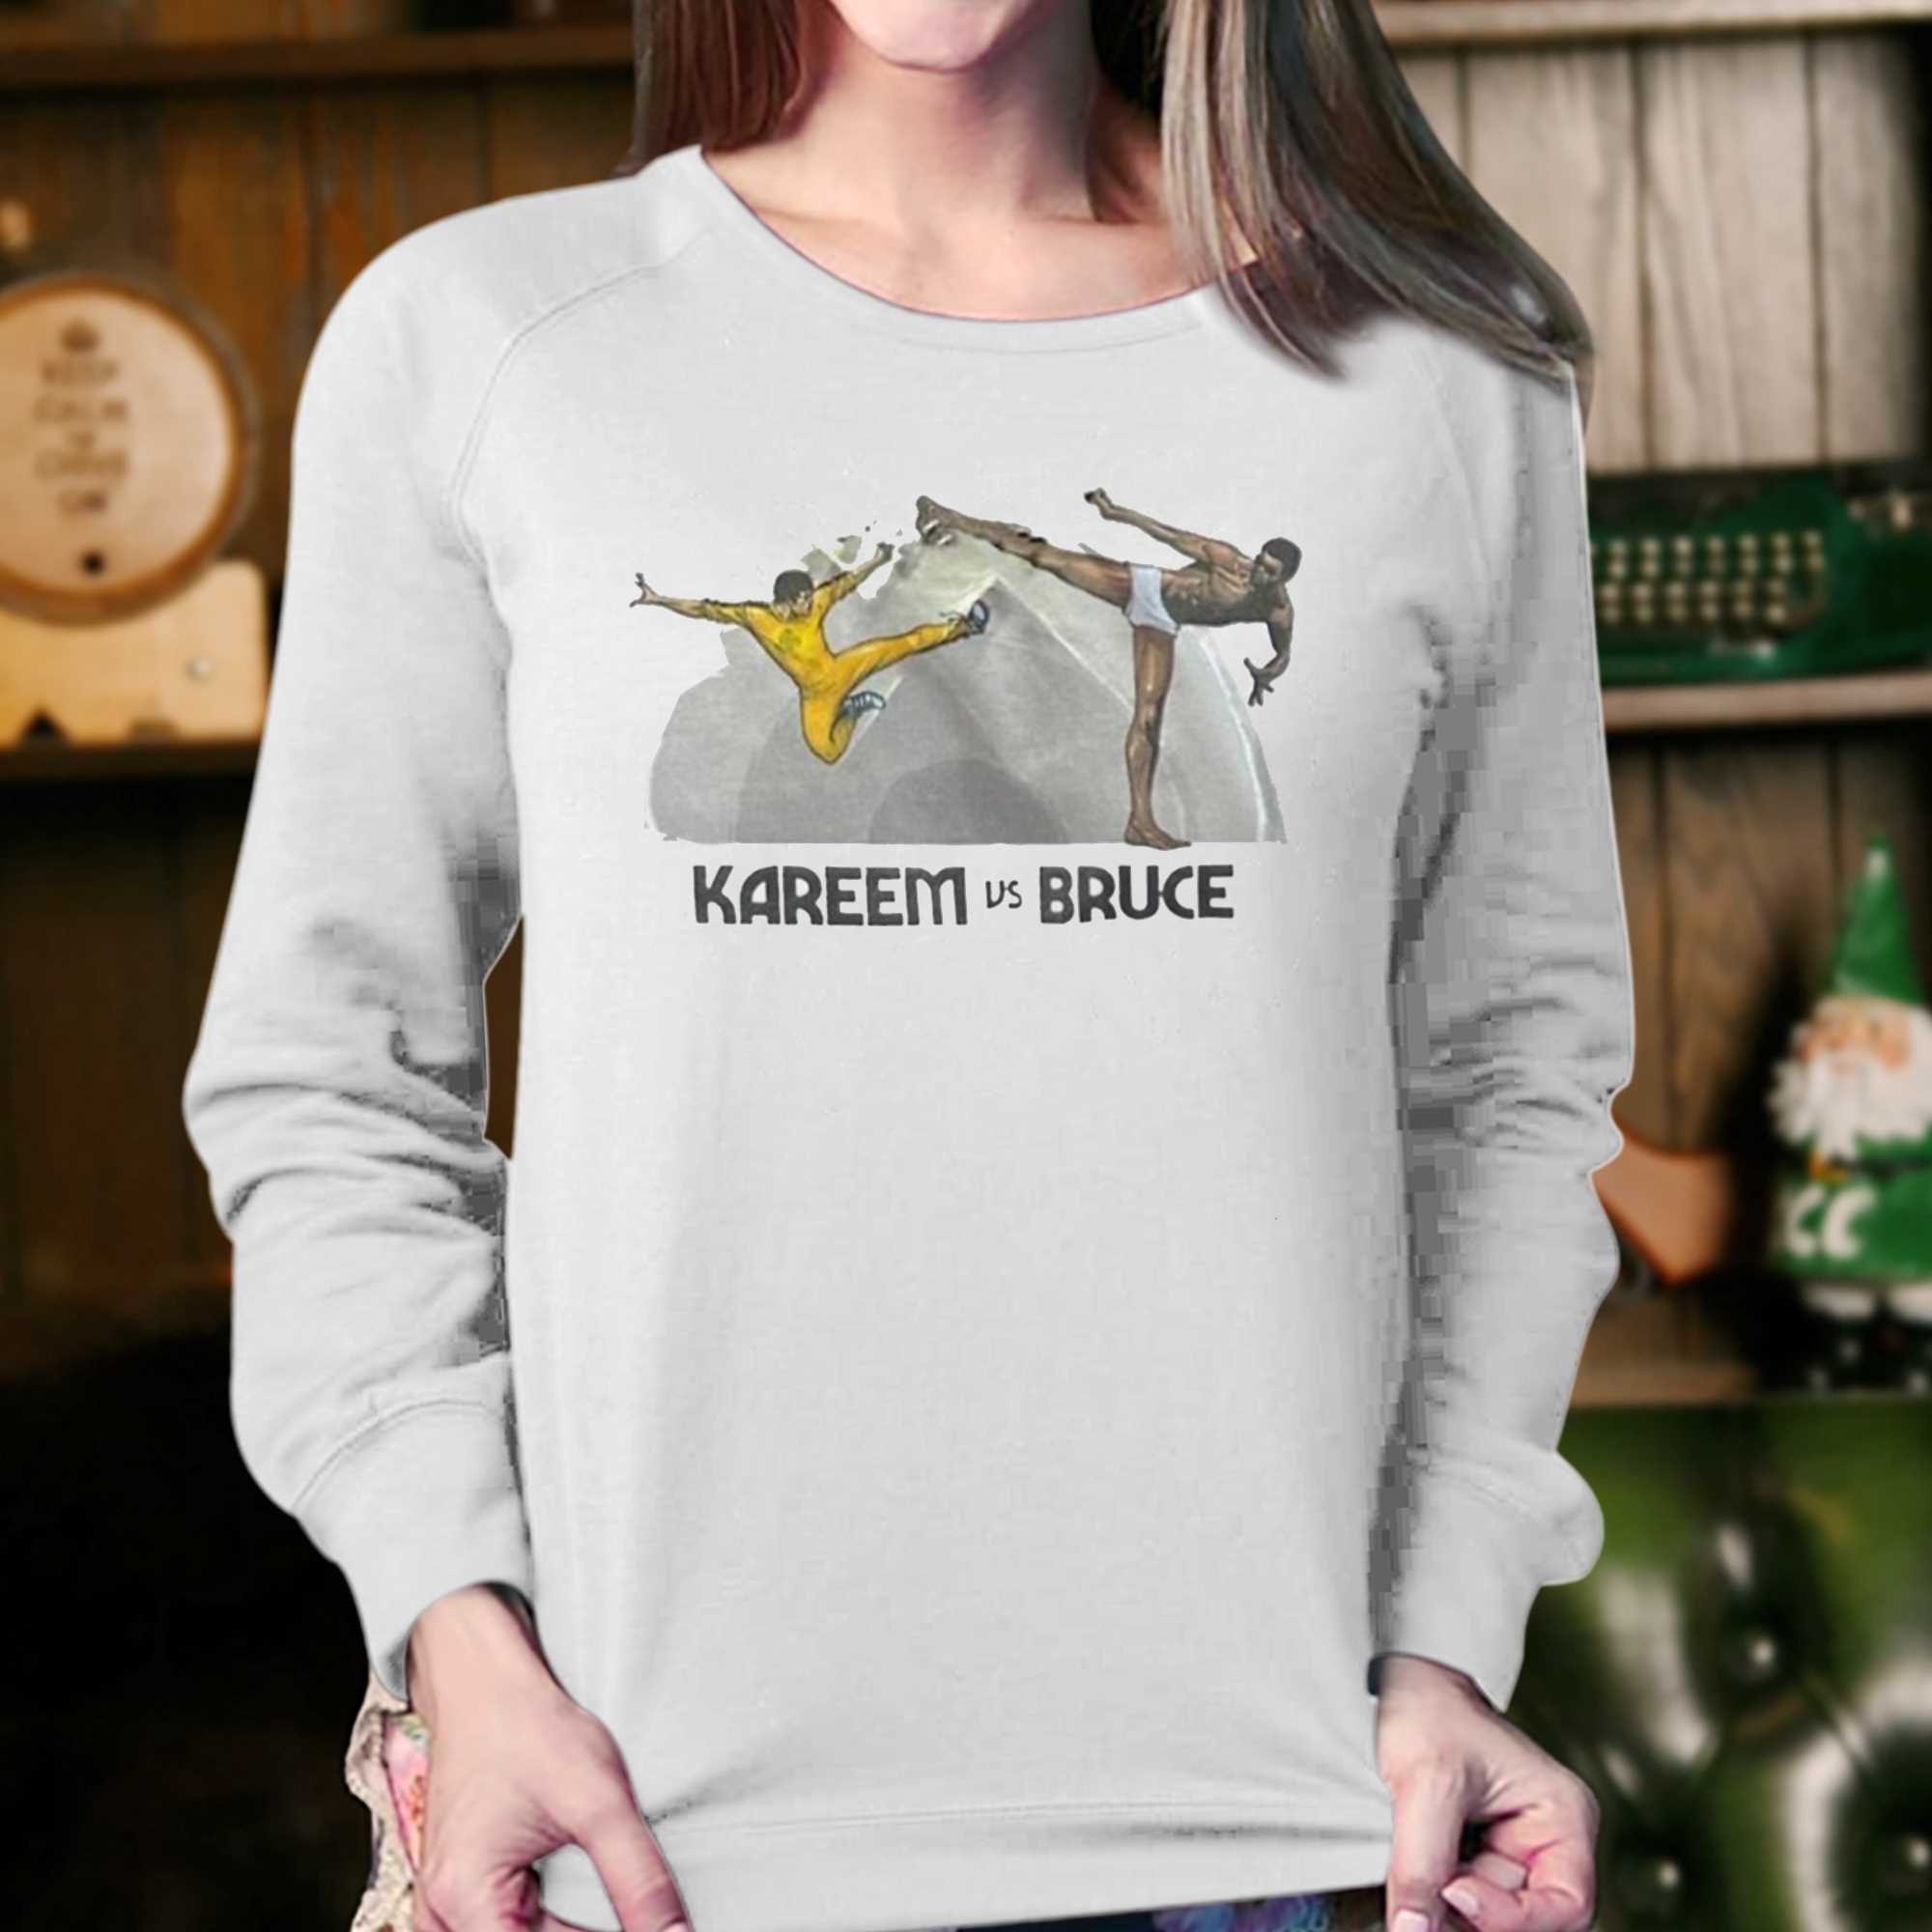 Cheap NBA Star Kareem Abdul Jabbar Wear Kareem Vs Bruce T Shirt - Allsoymade